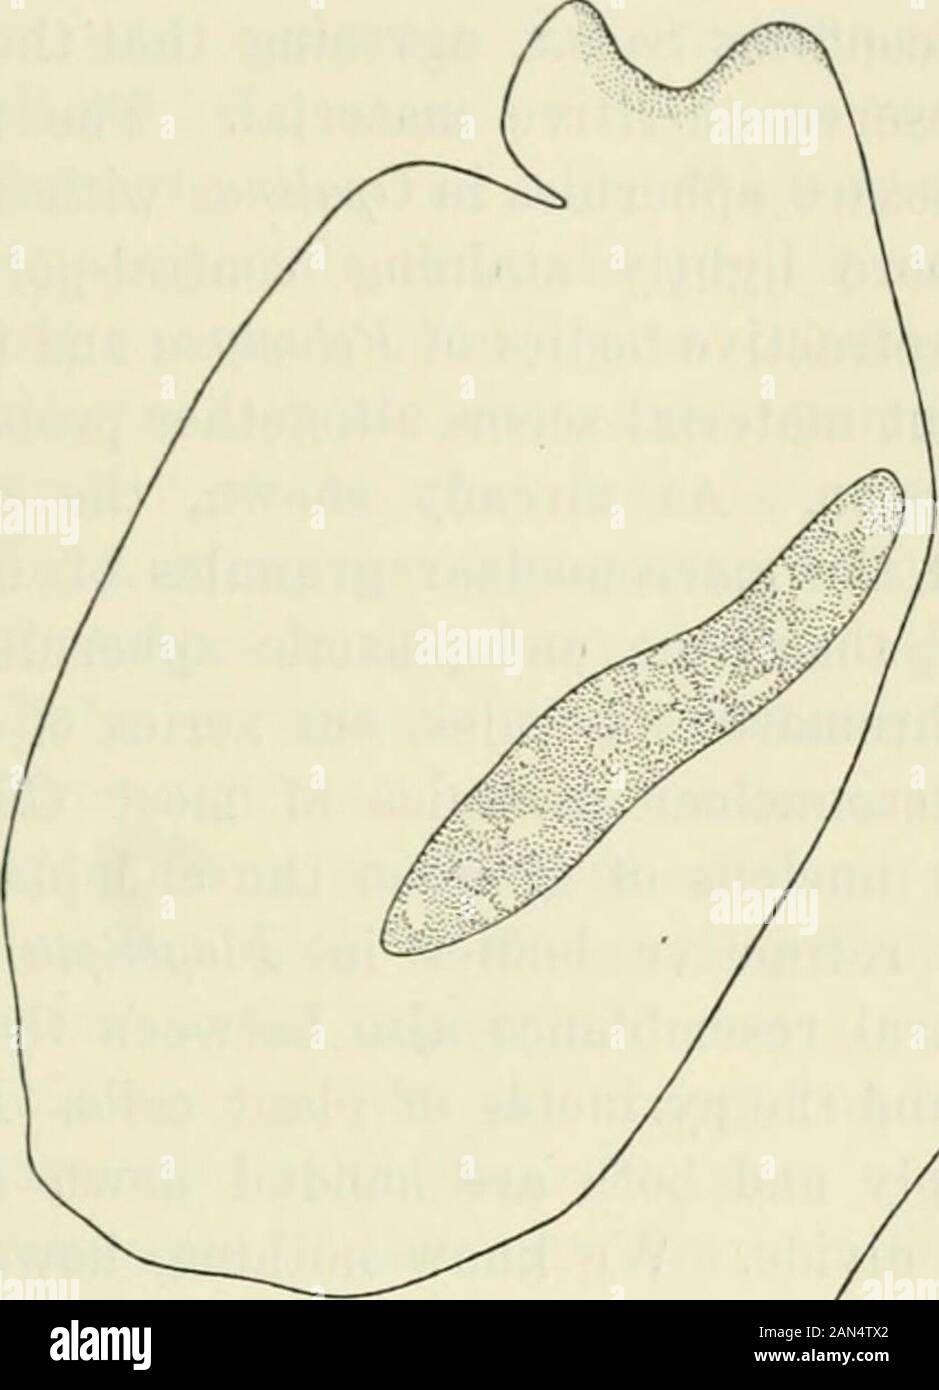 Opalina: seine Anatomie und Reproduktion, mit einer Beschreibung der Infektion Experimente und ein chronologischer Überblick über die Literatur. ion, aber es deutet darauf hin, dass die Substanz des Chromatins Kügelchen seinen Weg in die endoplasmicspherules finden. Dieses, gerendert wird, noch wahrscheinlicher durch die Tatsache in mentionedthat Hoplitophrya scheinbar ähnlichen refraktive Kügelchen ergeben sich inder macronucleus und in die verstreuten Gruppen von macronuclear gra-nules, wenn die macronucleus Fragmente, Eefractive Kügelchen etwas vergleichbar mit denen in der endo-sarc von Opalina sind nicht selten unter den Ciliata, Nydotherus Stockfoto